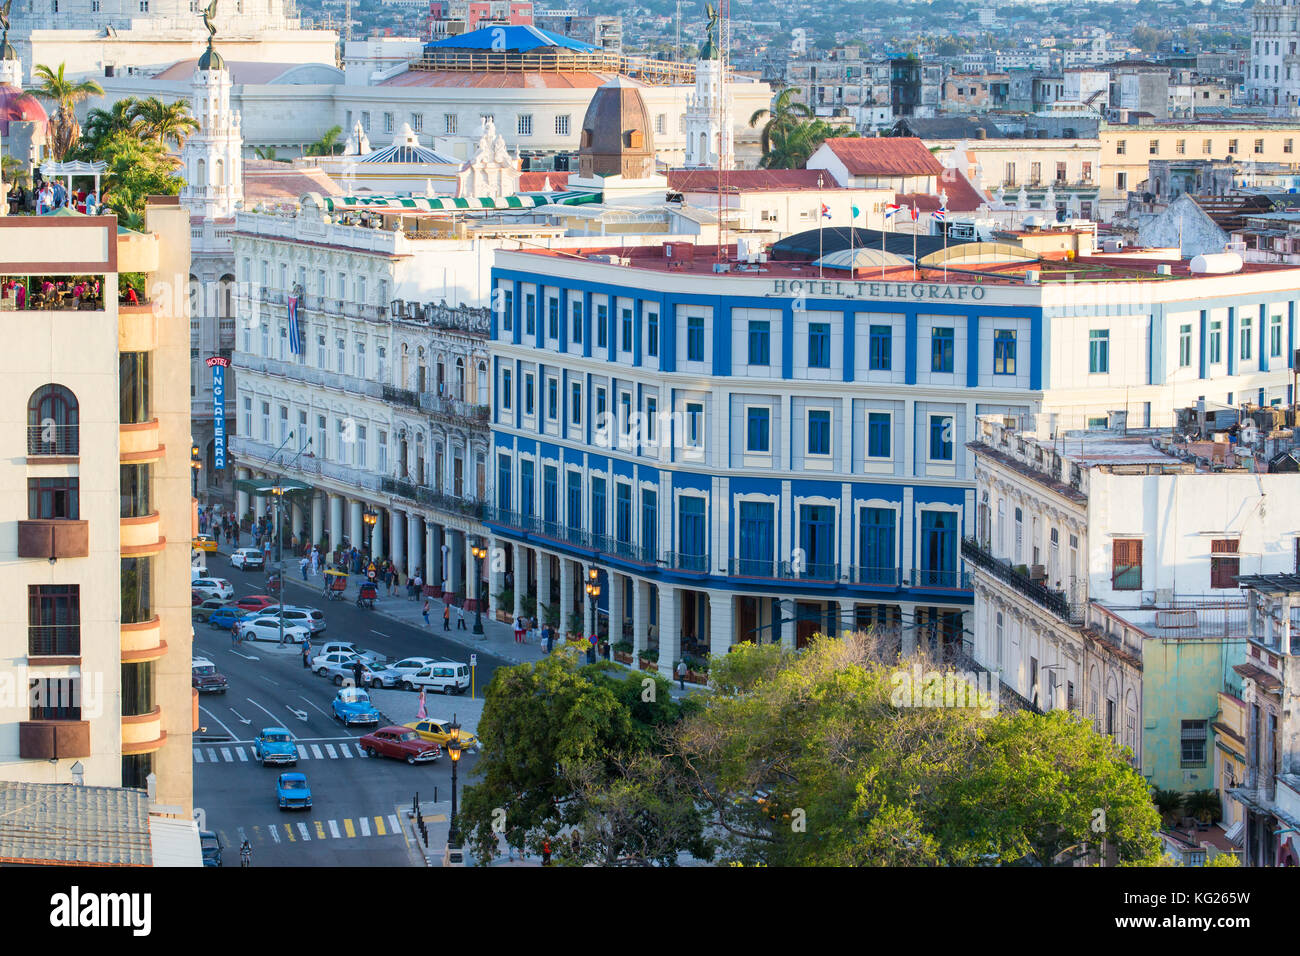 Architettura da una vista in elevato vicino al Malecon, Havana, Cuba, west indies, America centrale Foto Stock